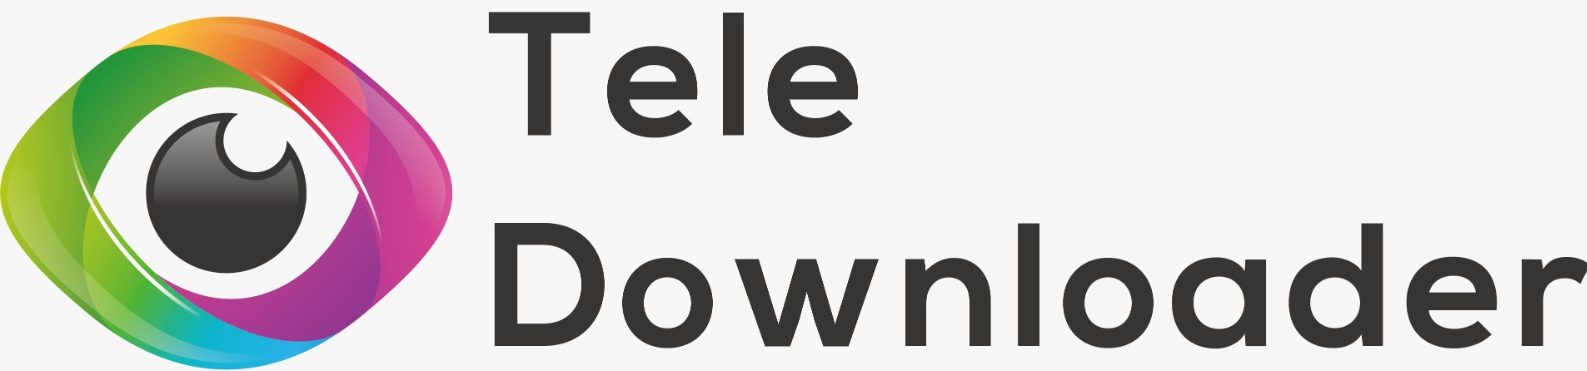 Tele Downloader logo